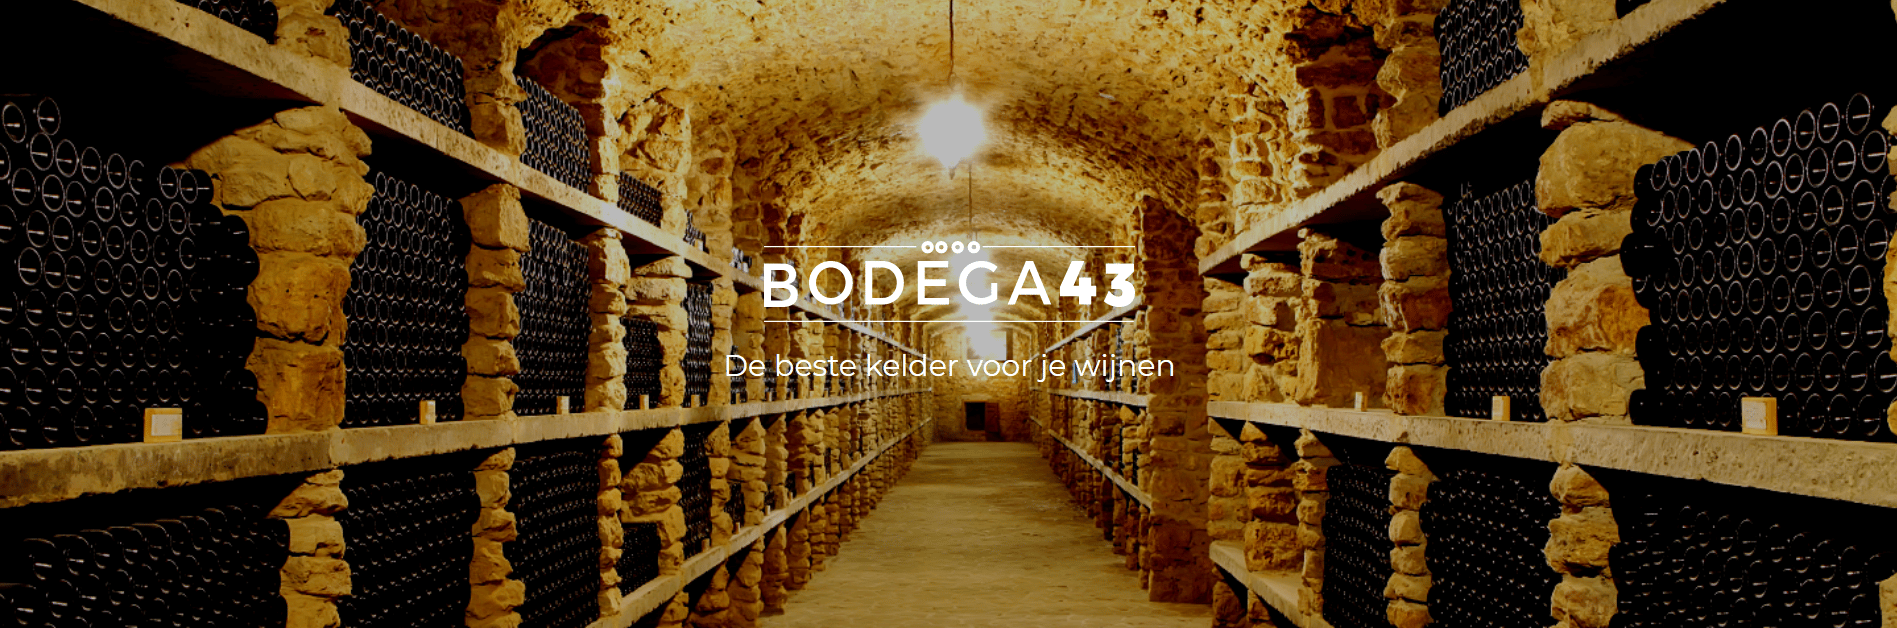 Bodega43 Wine Coolers Header Image